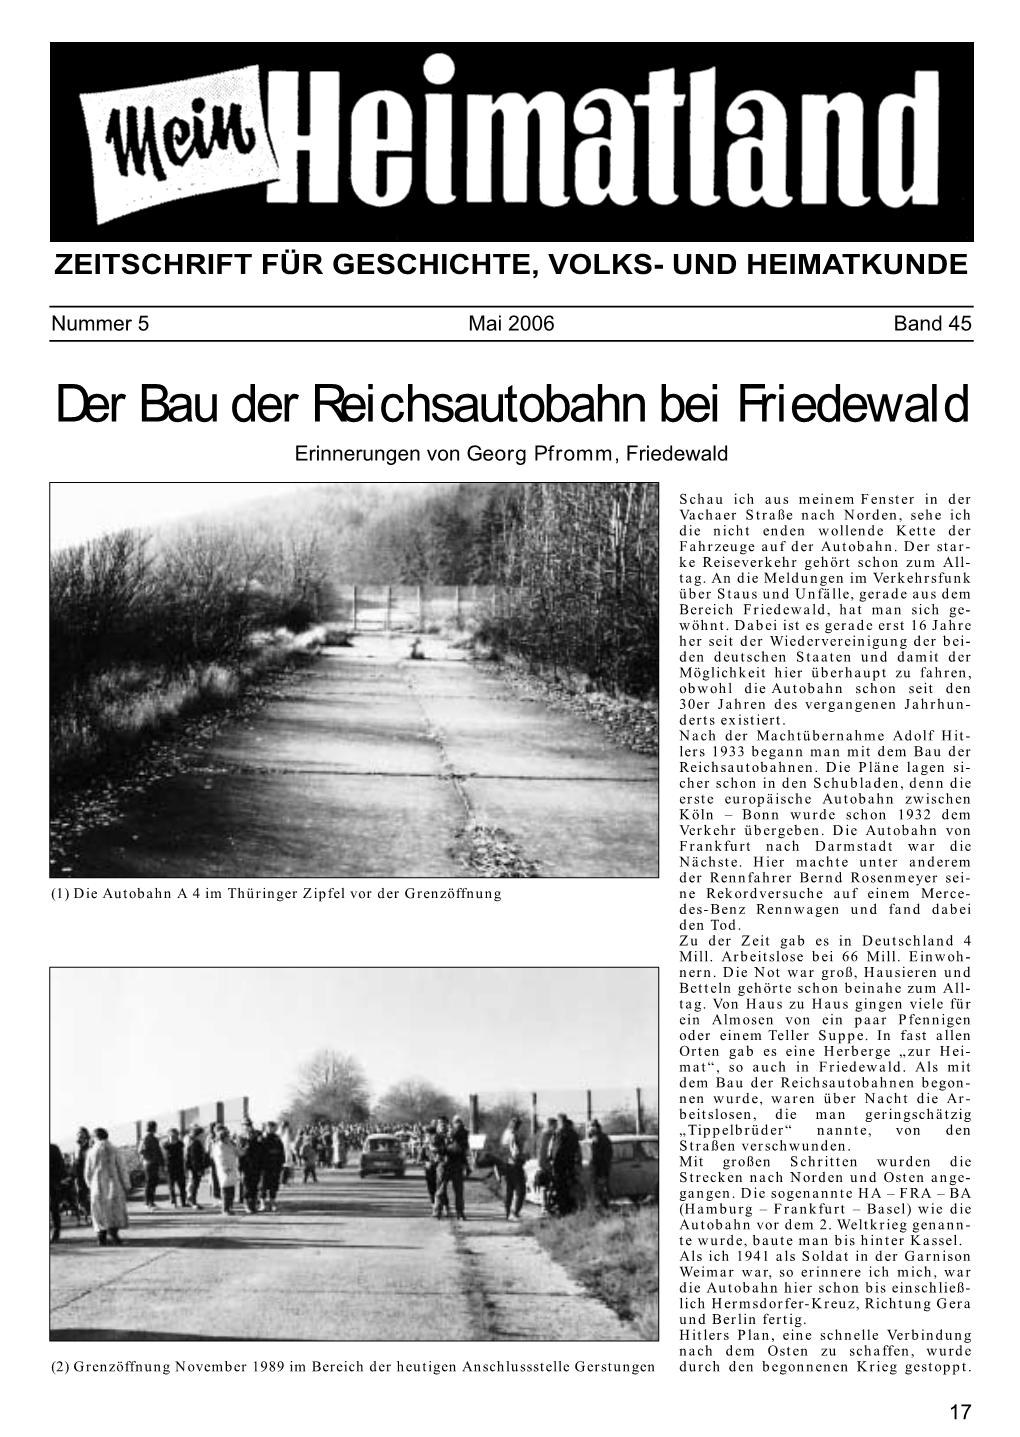 Der Bau Der Reichsautobahn Bei Friedewald Erinnerungen Von Georg Pfromm, Friedewald